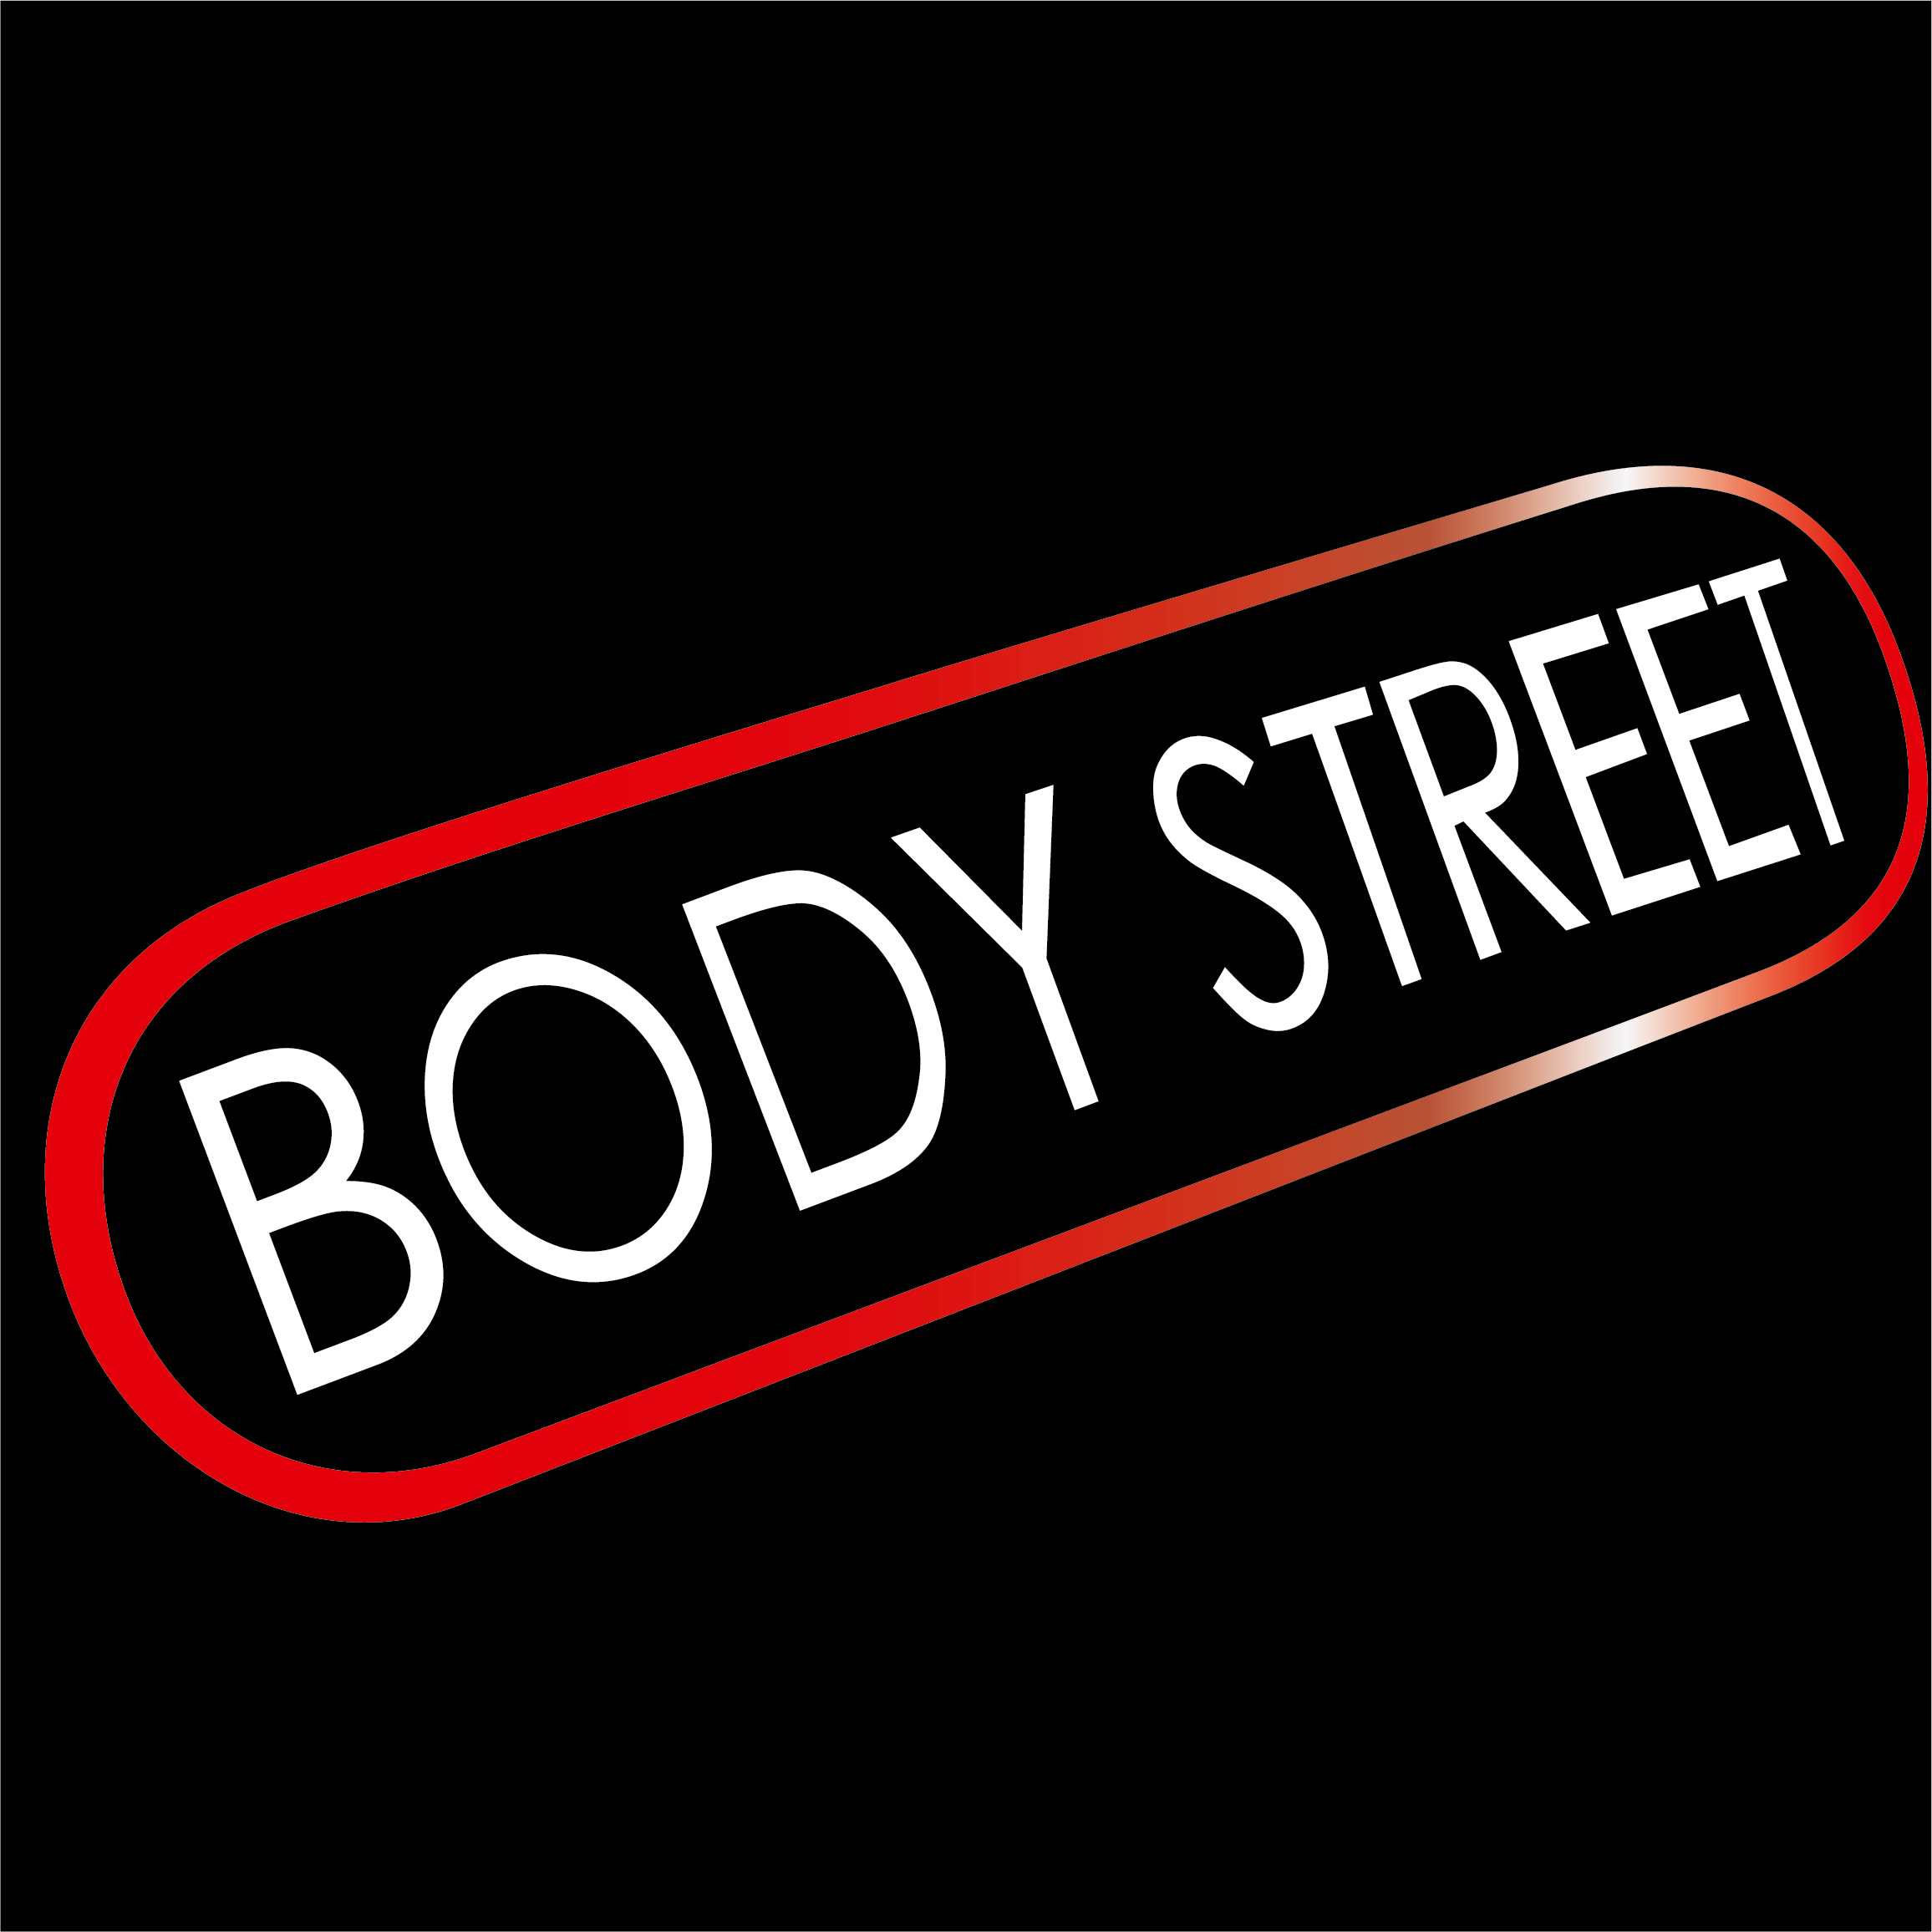 BODY STREET | Stuttgart Olgaeck | EMS Training